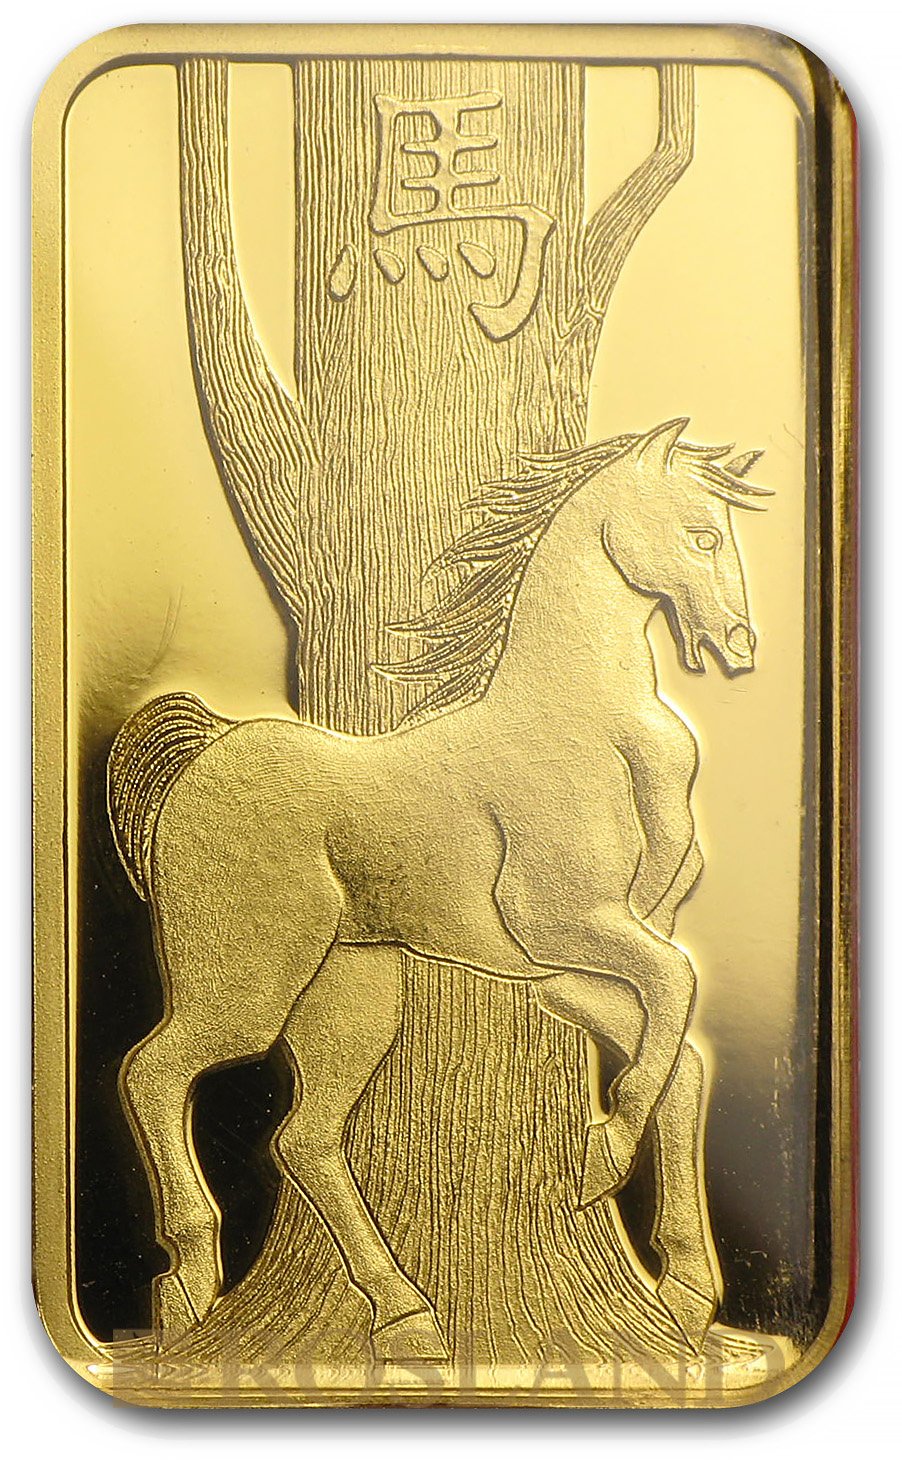 5 Gramm Goldbarren PAMP Lunar Jahr der Pferdes 2014